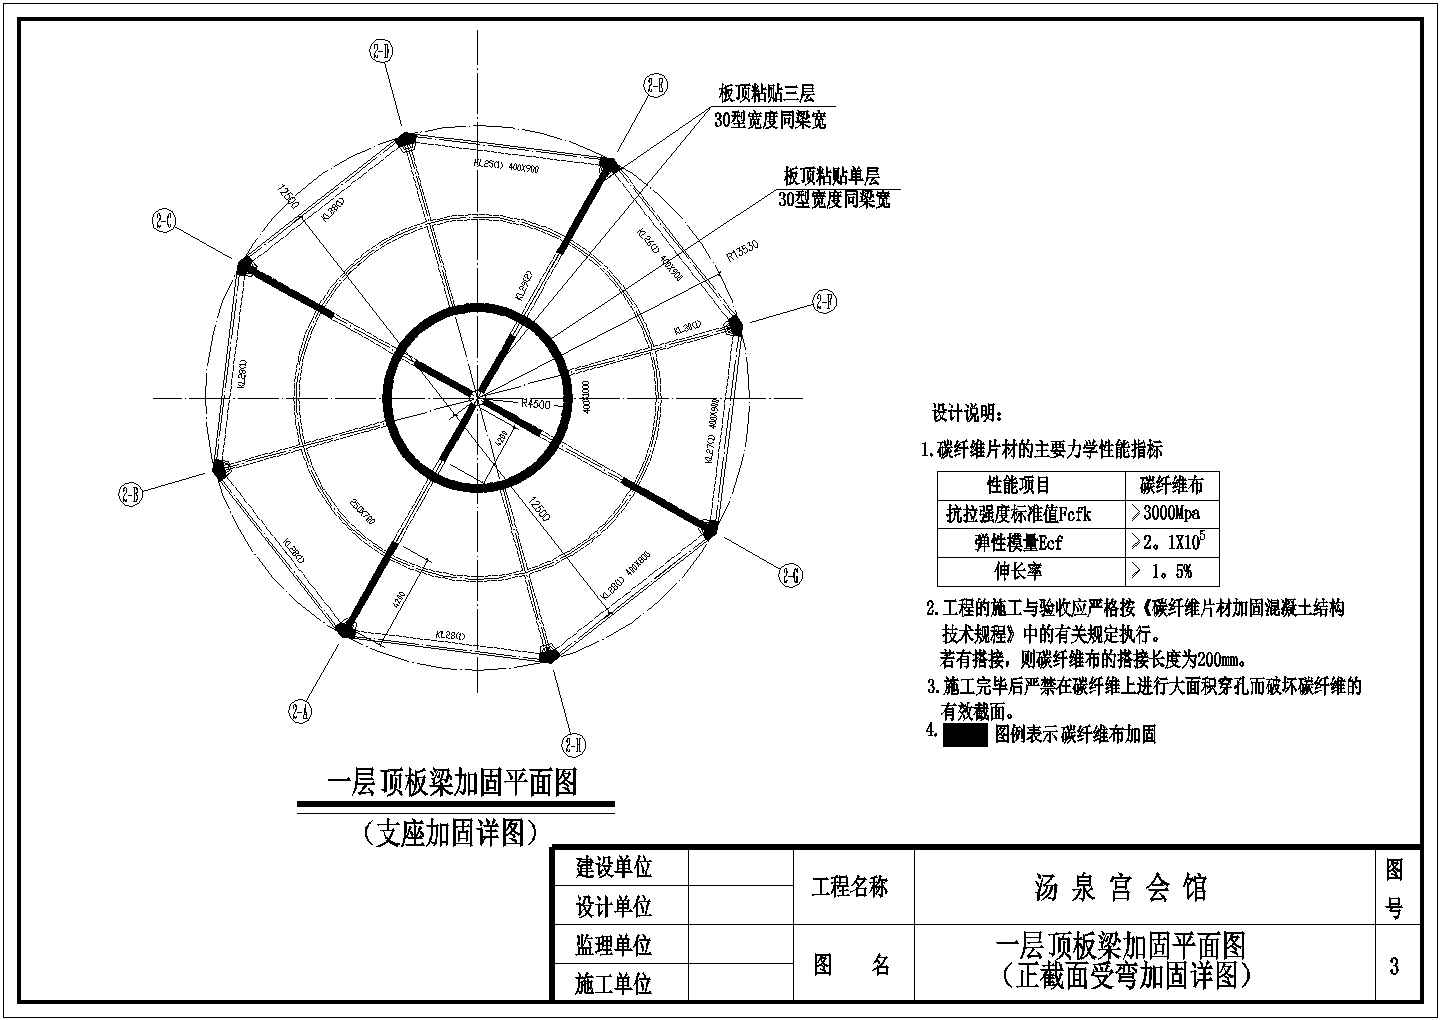 【武汉】汤泉宫会馆结构改造加固设计图